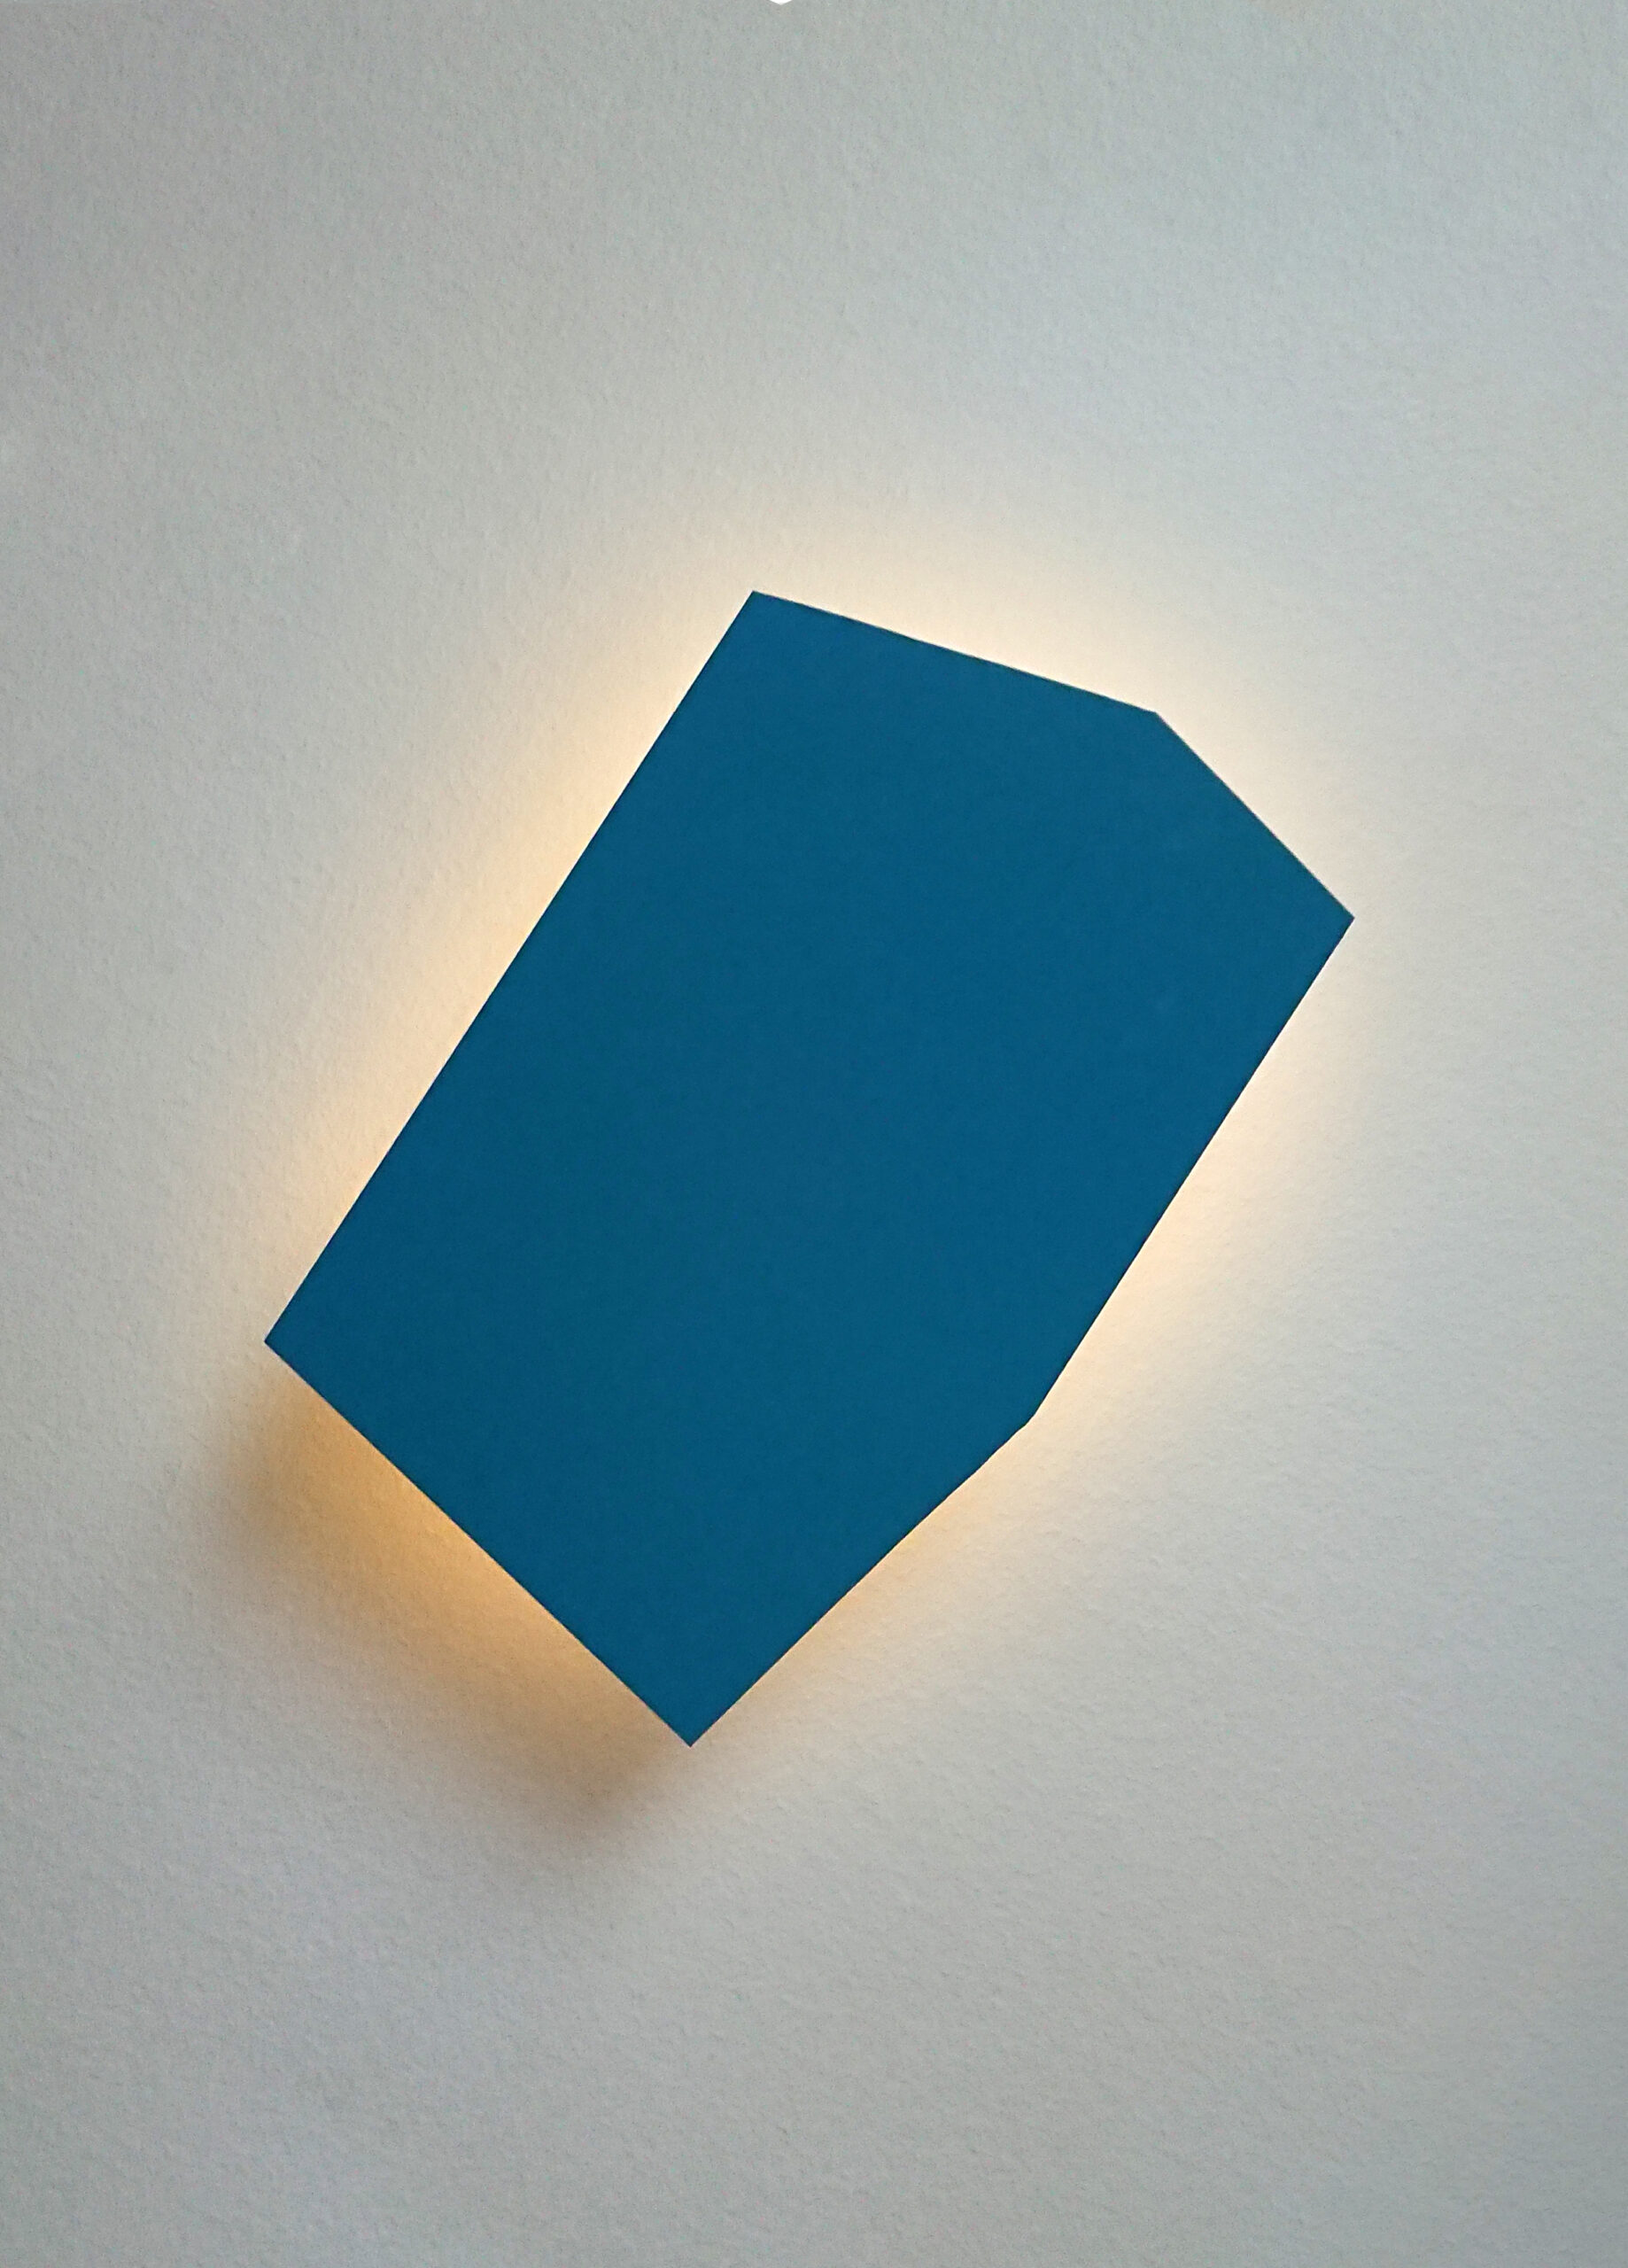 Blue Fractal illuminated